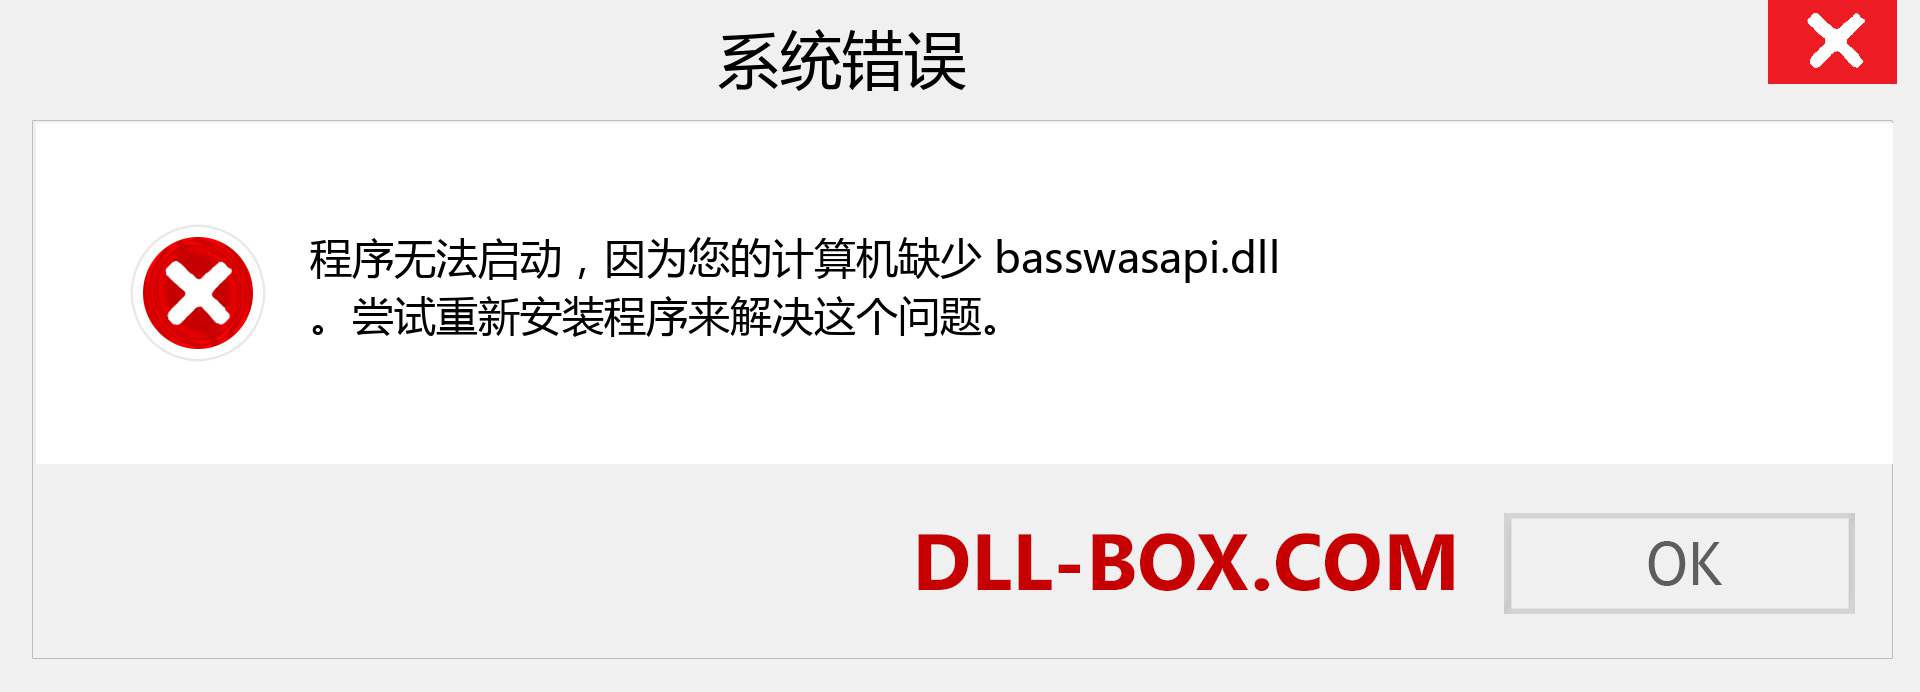 basswasapi.dll 文件丢失？。 适用于 Windows 7、8、10 的下载 - 修复 Windows、照片、图像上的 basswasapi dll 丢失错误